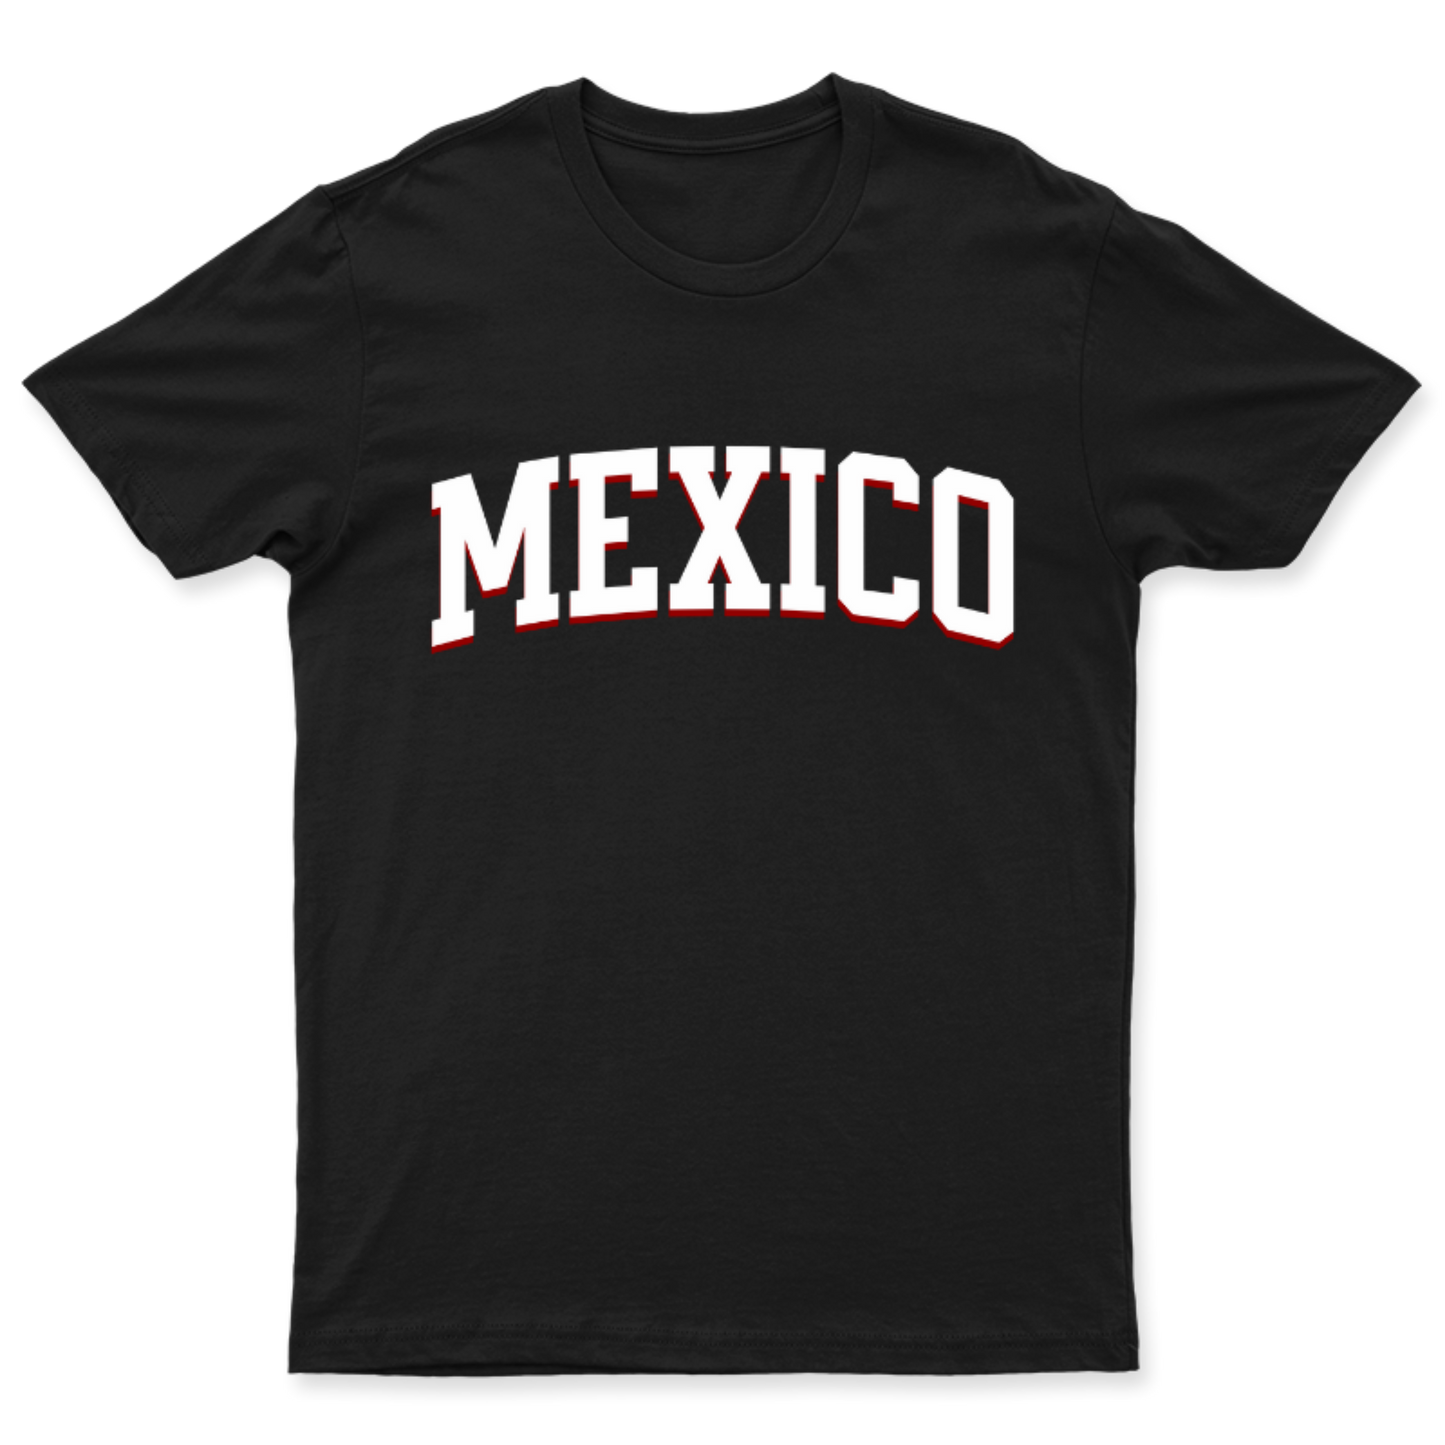 Playera de Mexico